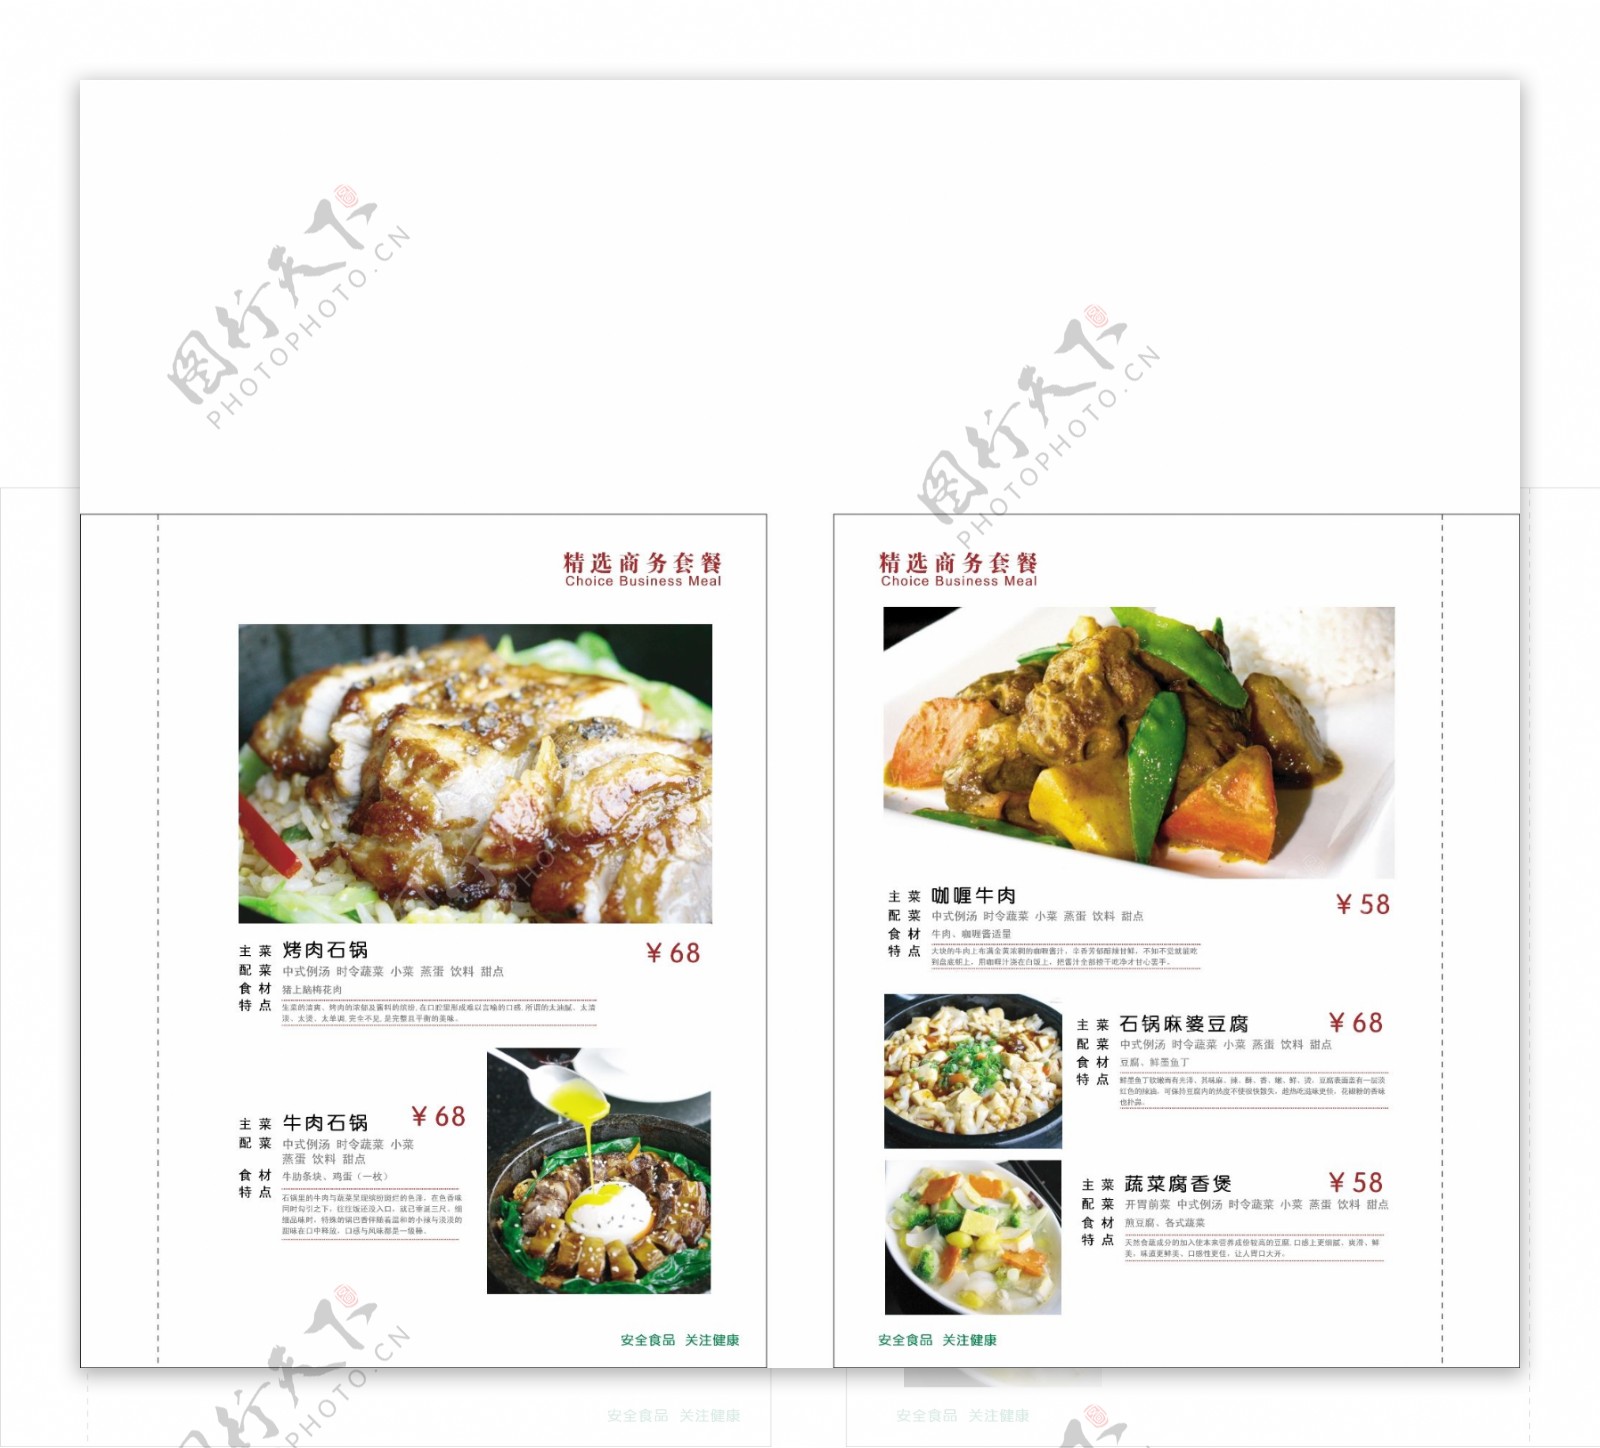 中式菜谱菜单设计矢量素材